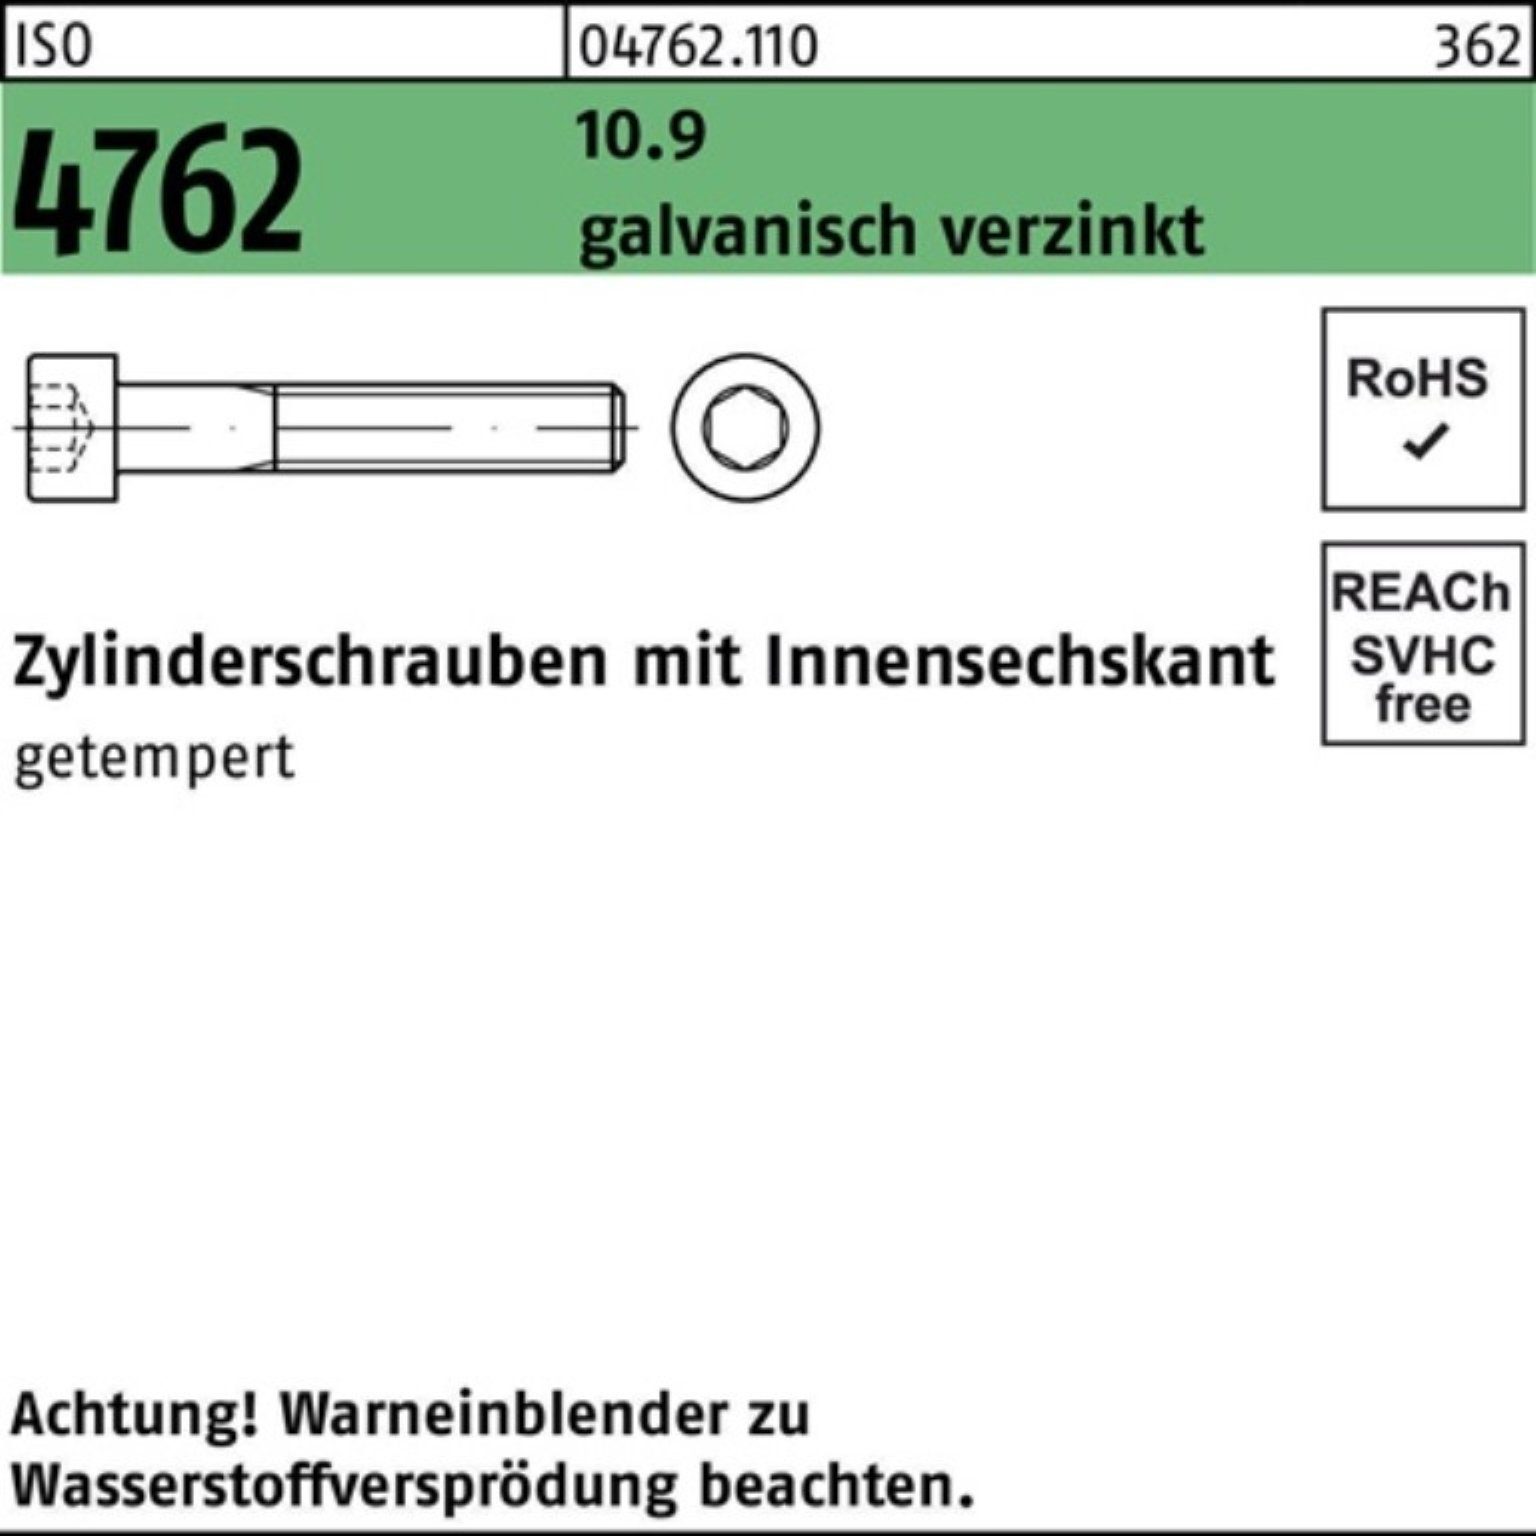 Reyher Zylinderschraube Zylinderschraube 10.9 100er ISO Pack galv.verz. Innen-6kt 4762 M36x130